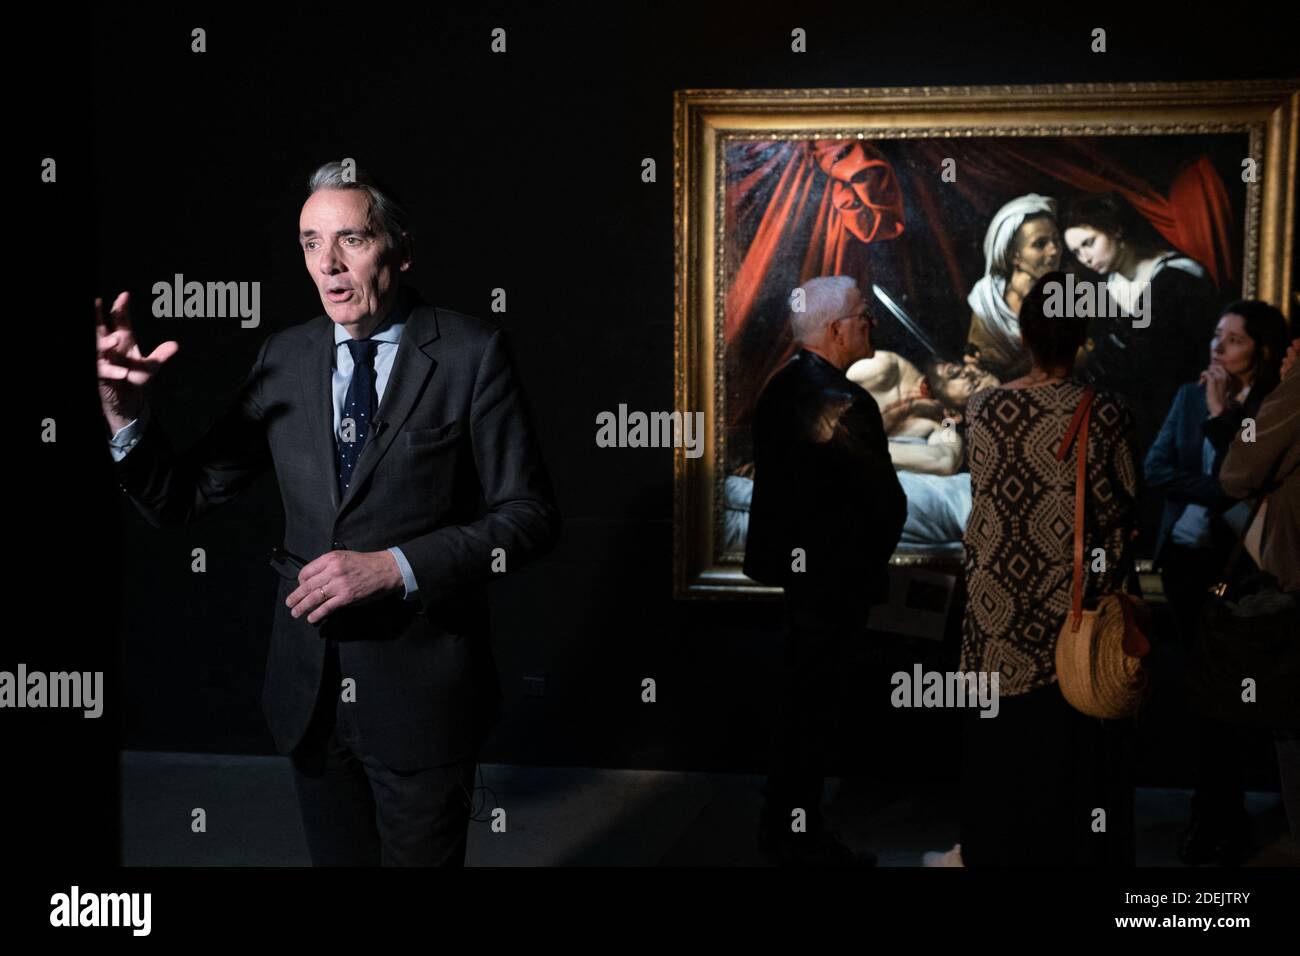 Stéphane PINTA, expert en peinture. Le tableau 'Judith et Holofernes' du  peintre italien CARAVAGGIO est présenté au public à partir du 17 juin 2019,  à Toulouse (France), après des présentations à Londres,